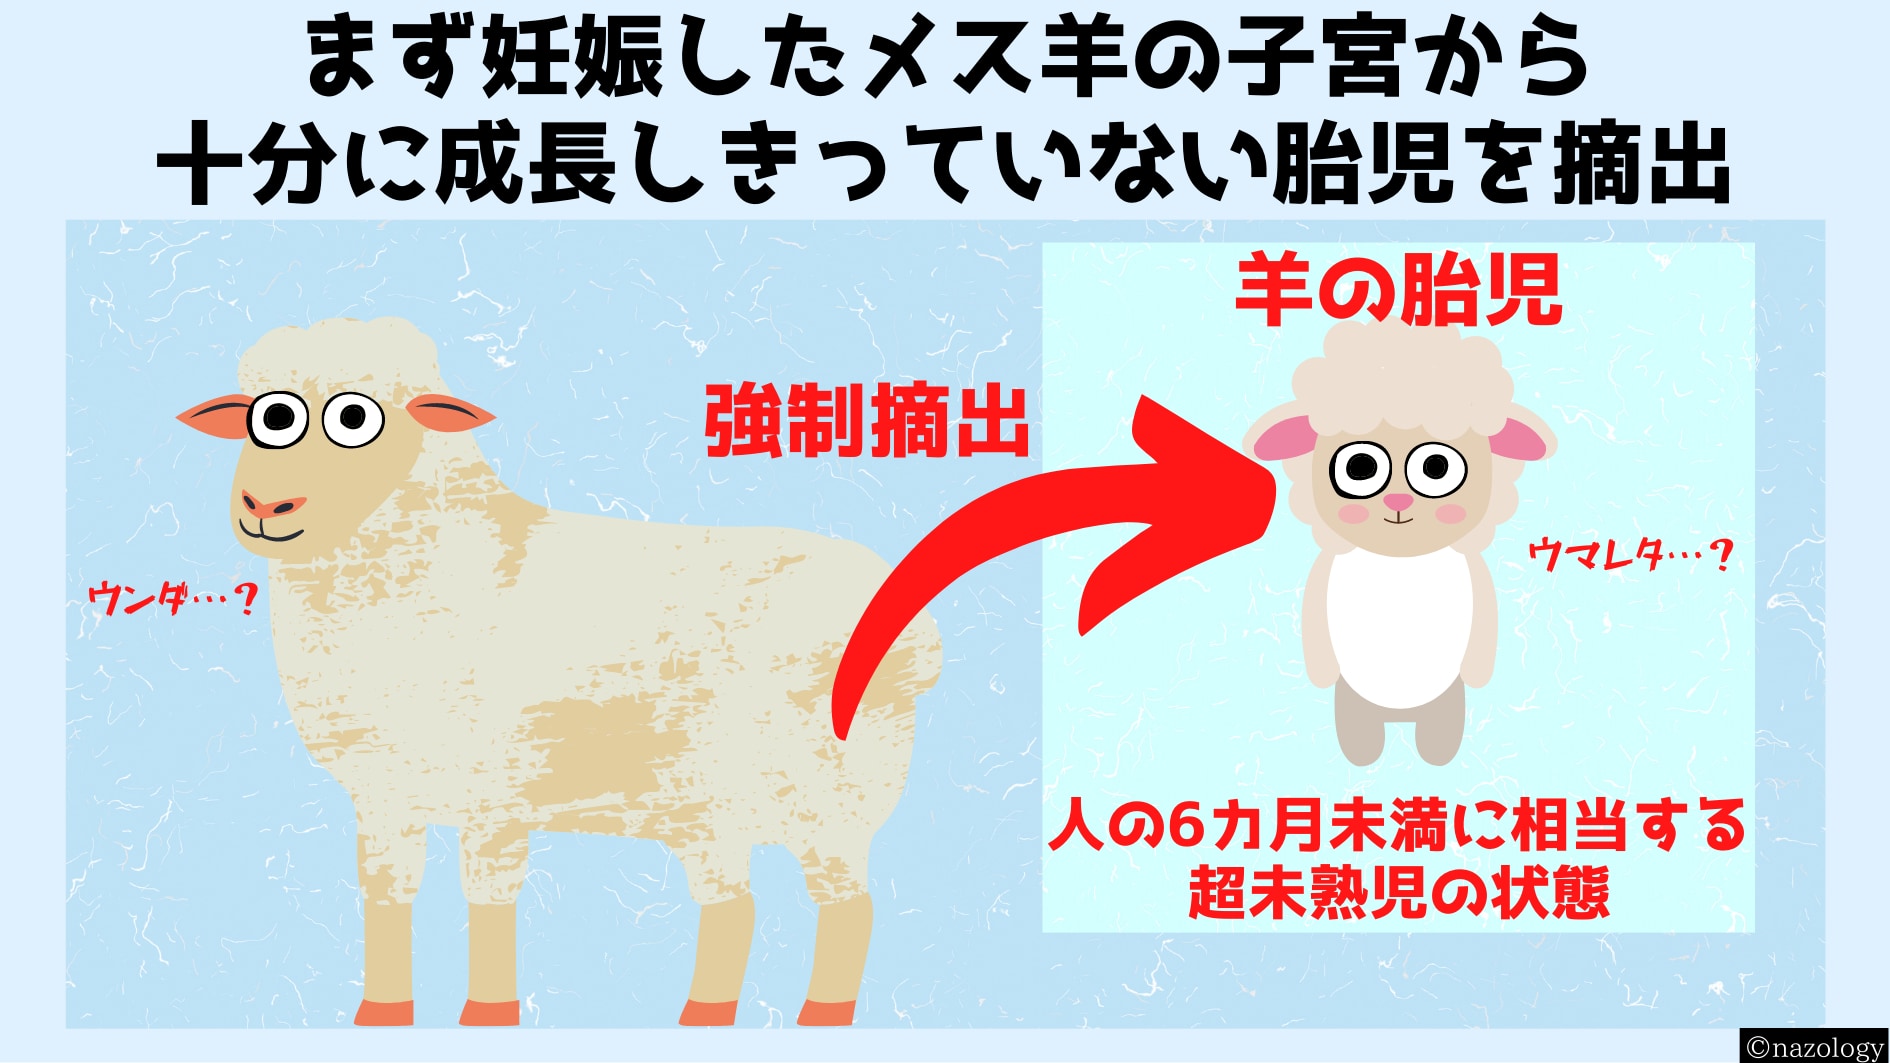 羊は胎児の研究に最も使われる動物である